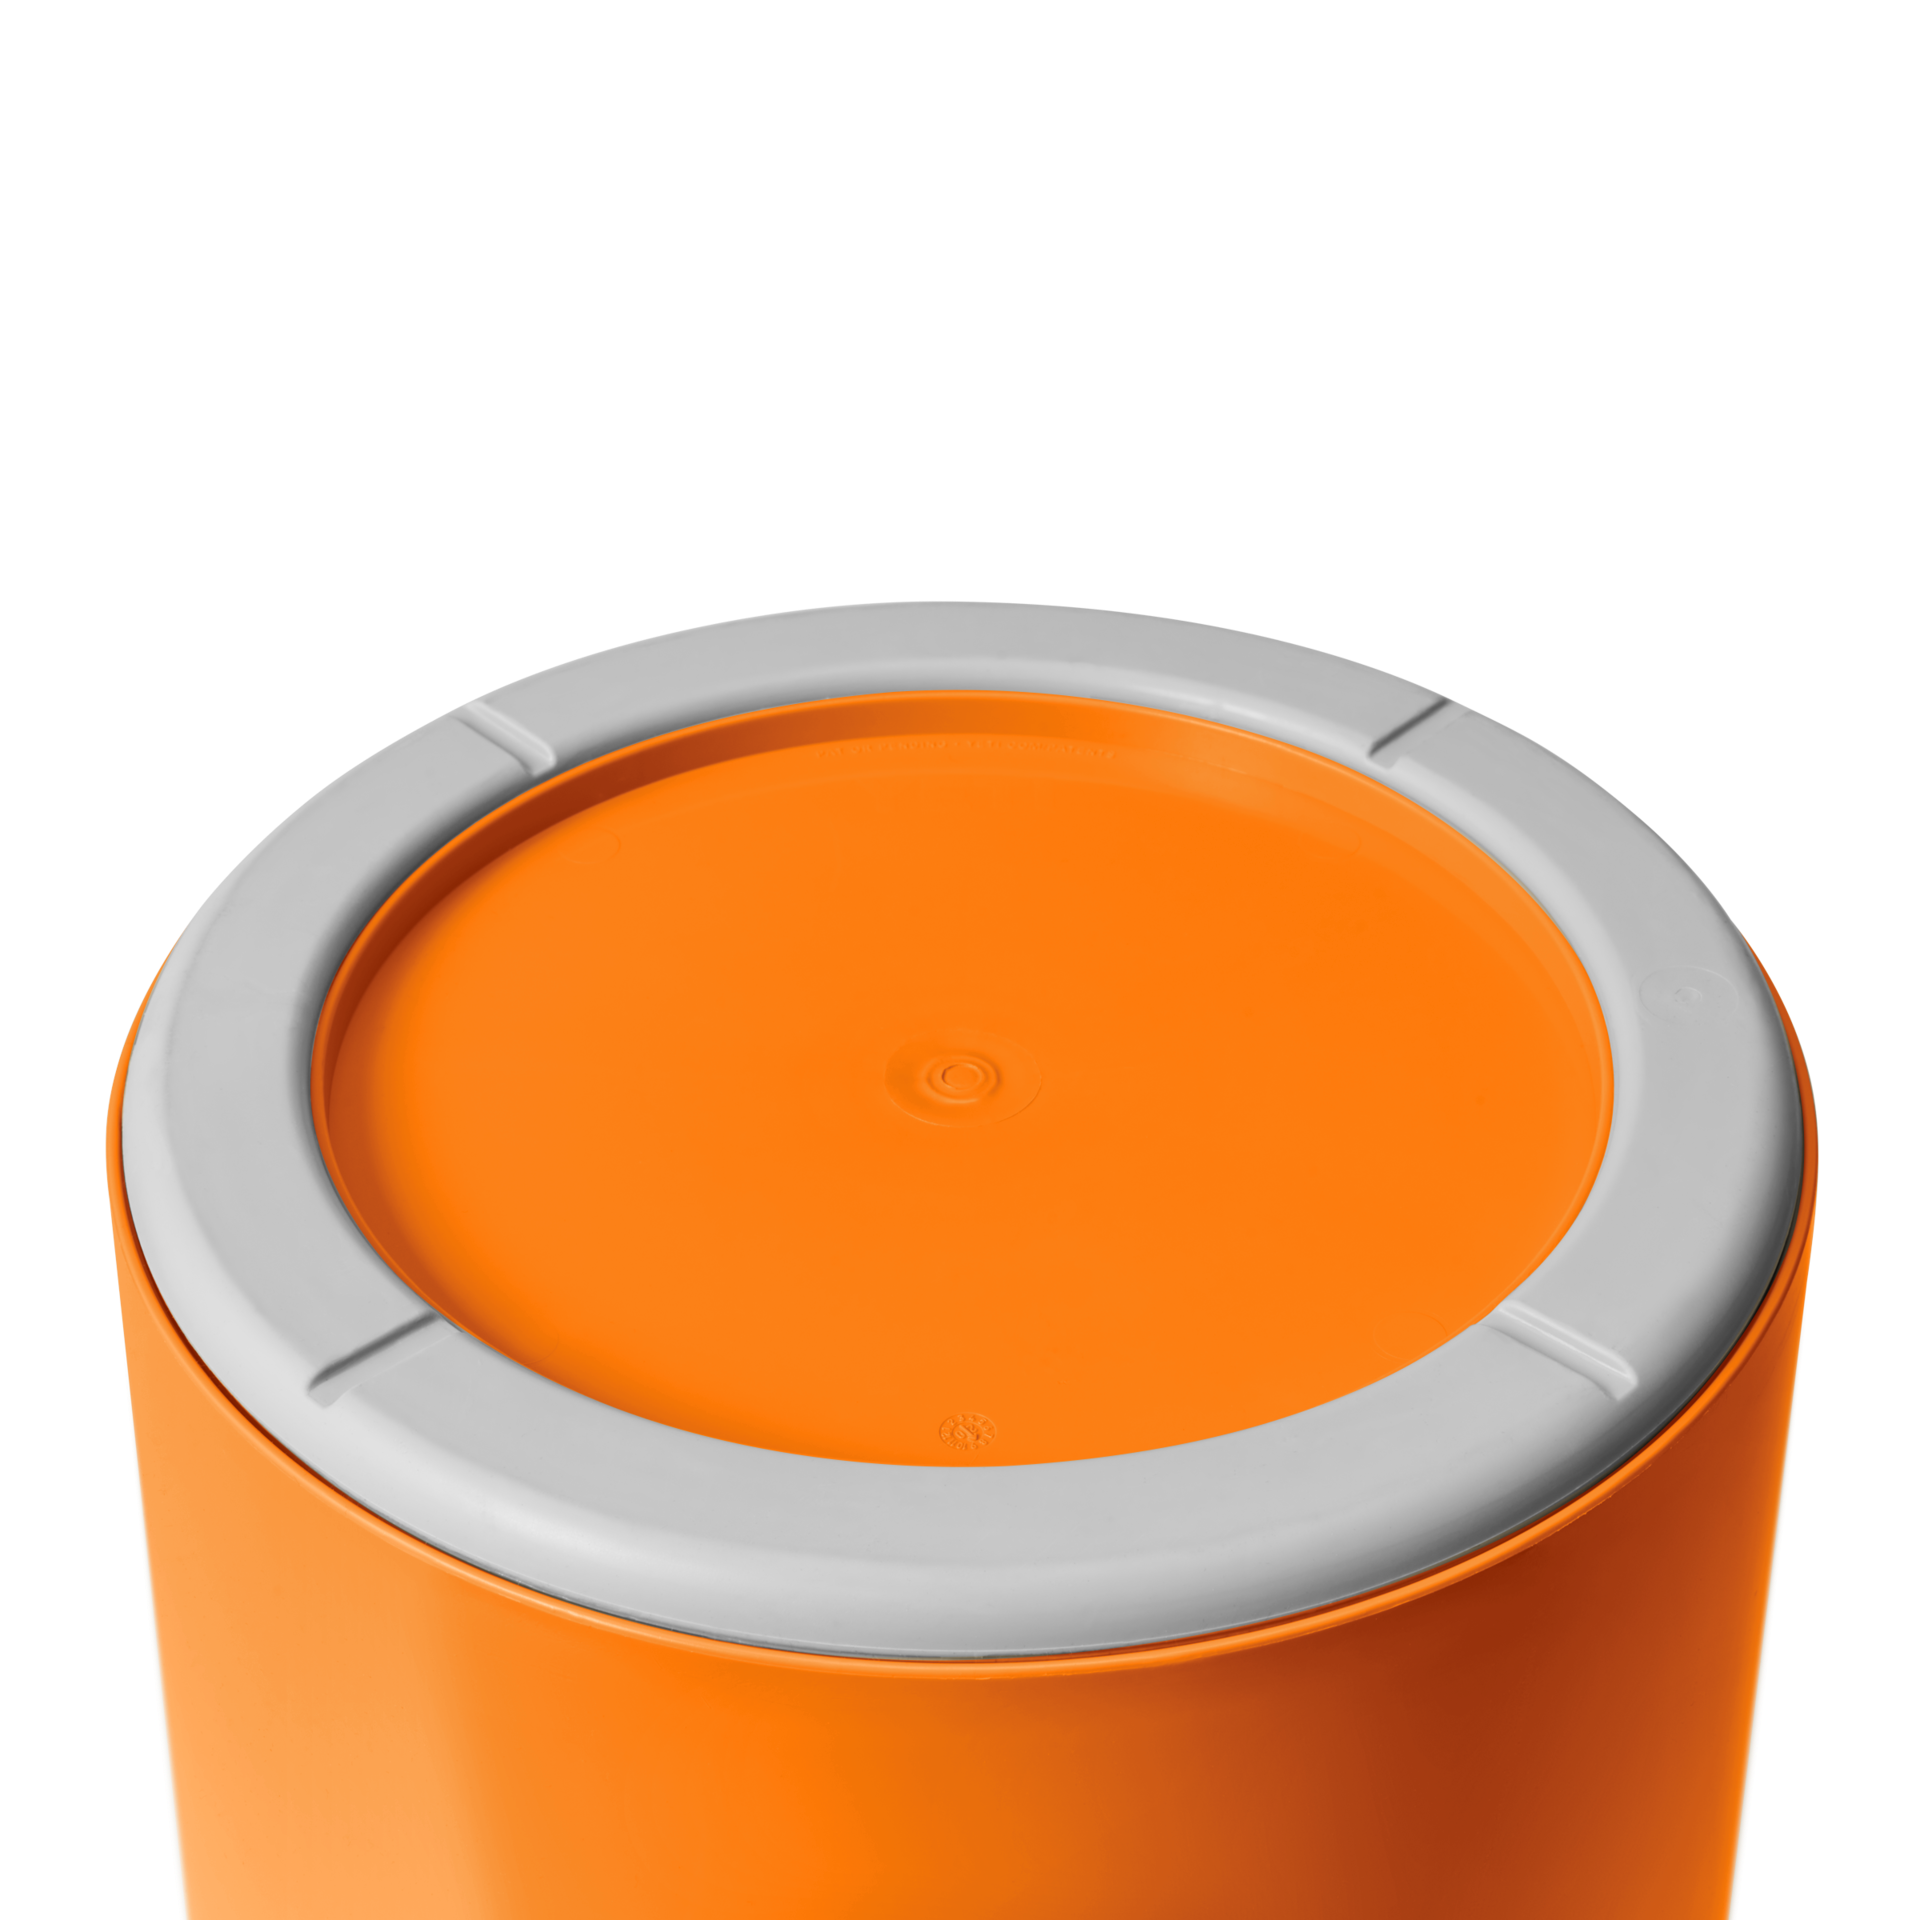 LoadOut 5-Gallon Bucket - King Crab Orange